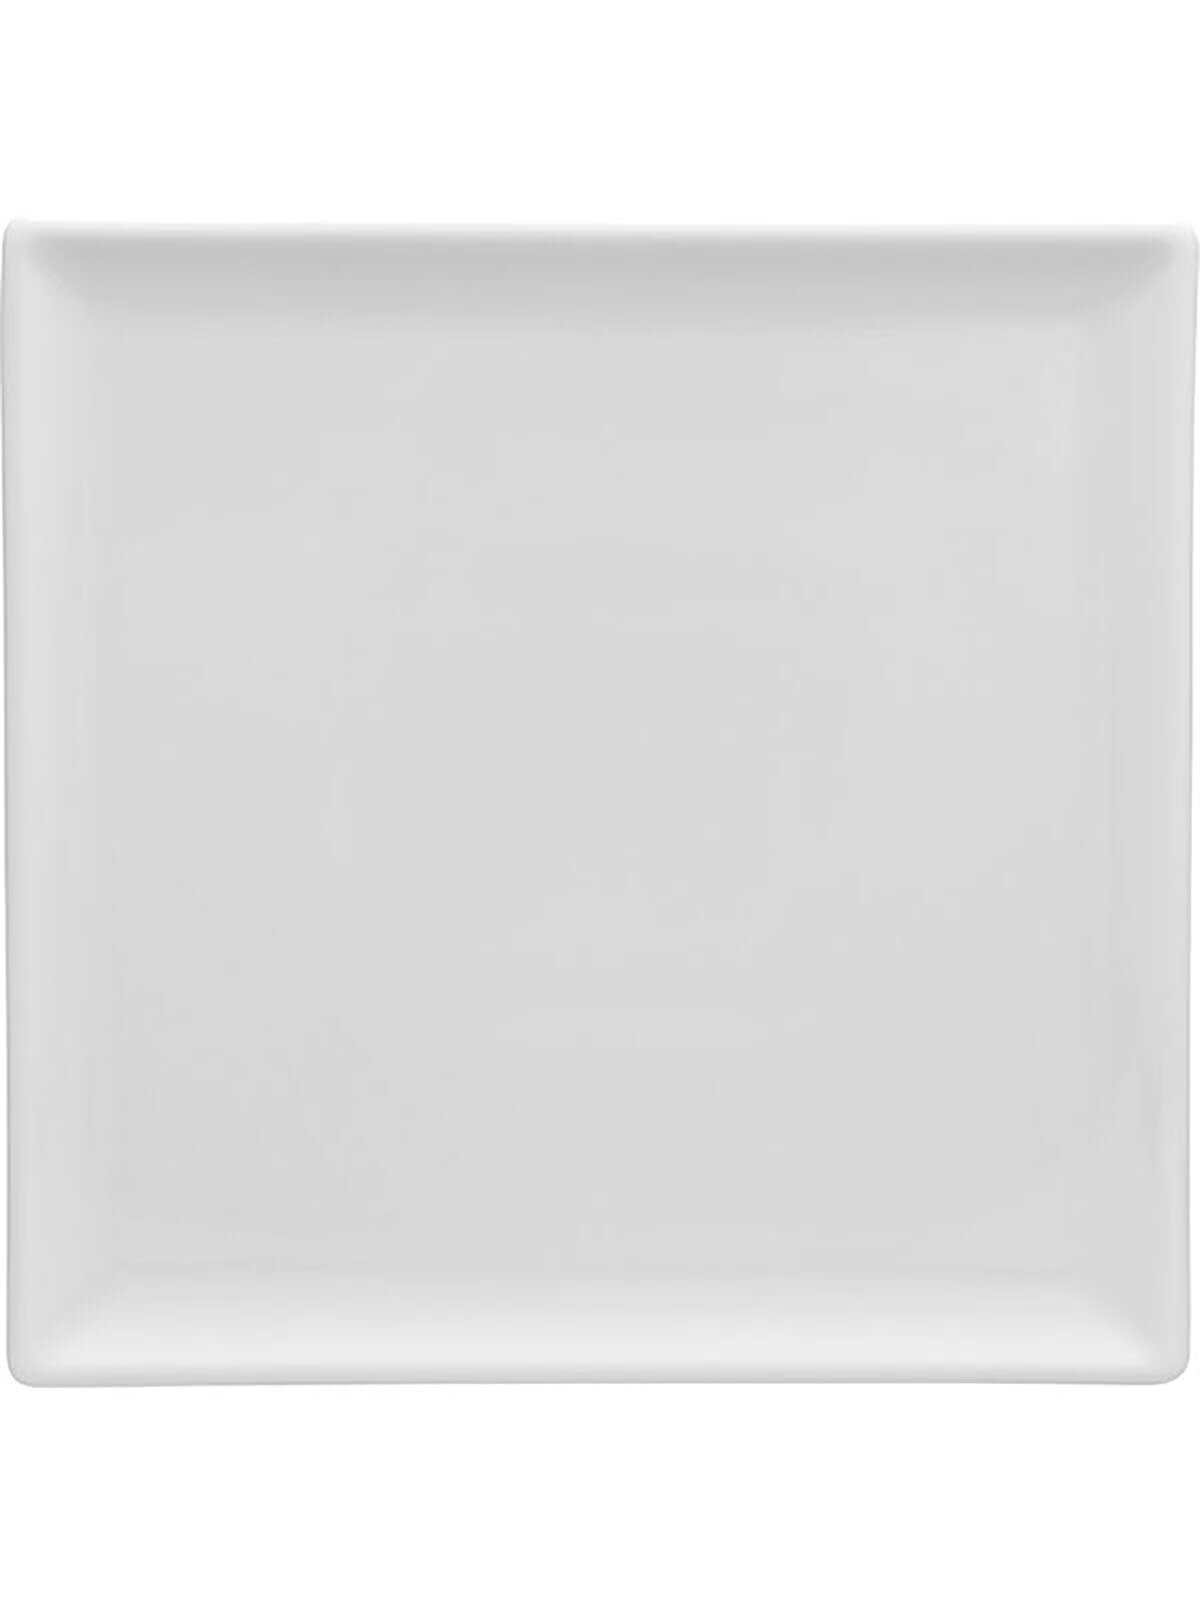 Тарелка сервировочная квадратная, 20,5x20,5 см